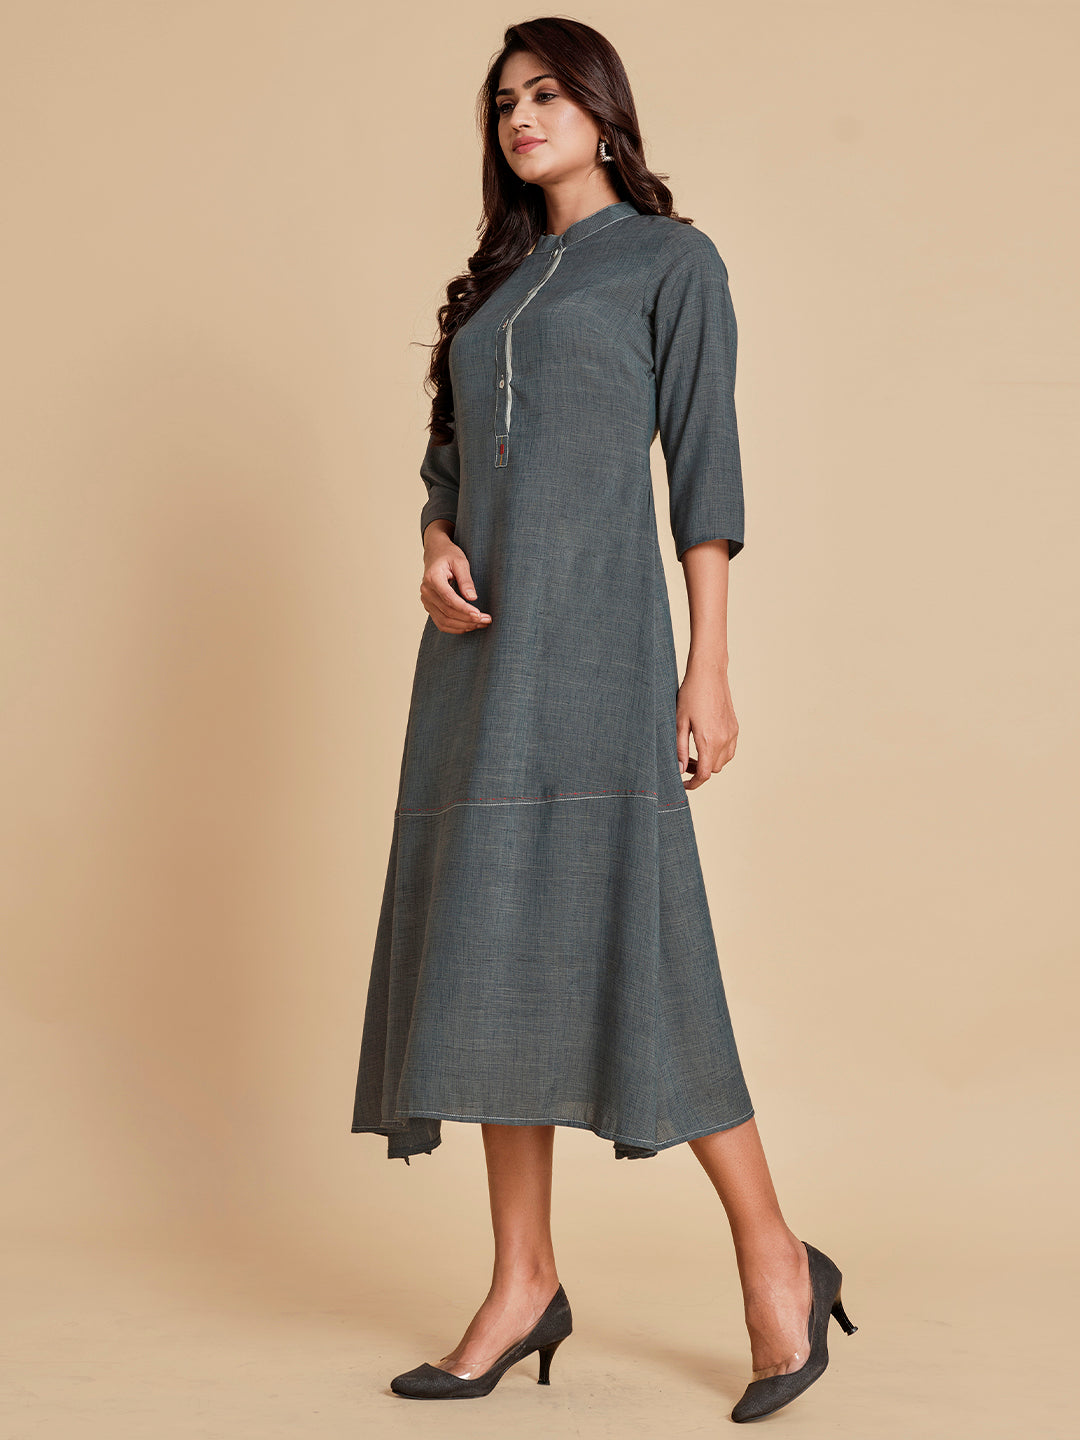 Grey A-Line Side Slit Dress - ARH895A